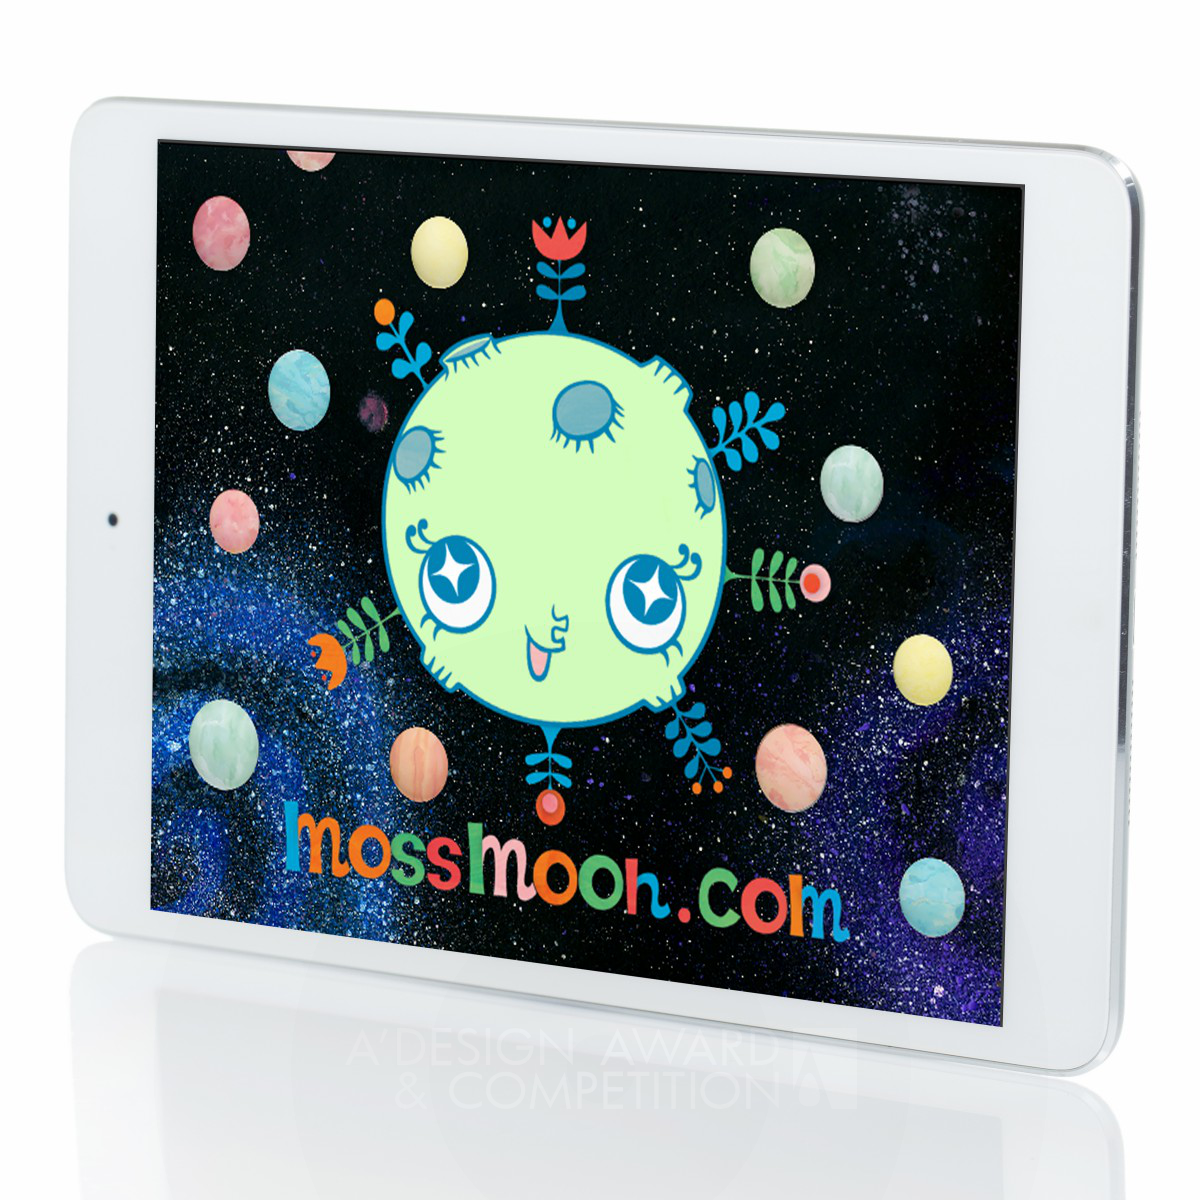 Kappa Jizo : Une Application de Livre d'Images Interactive pour Enfants